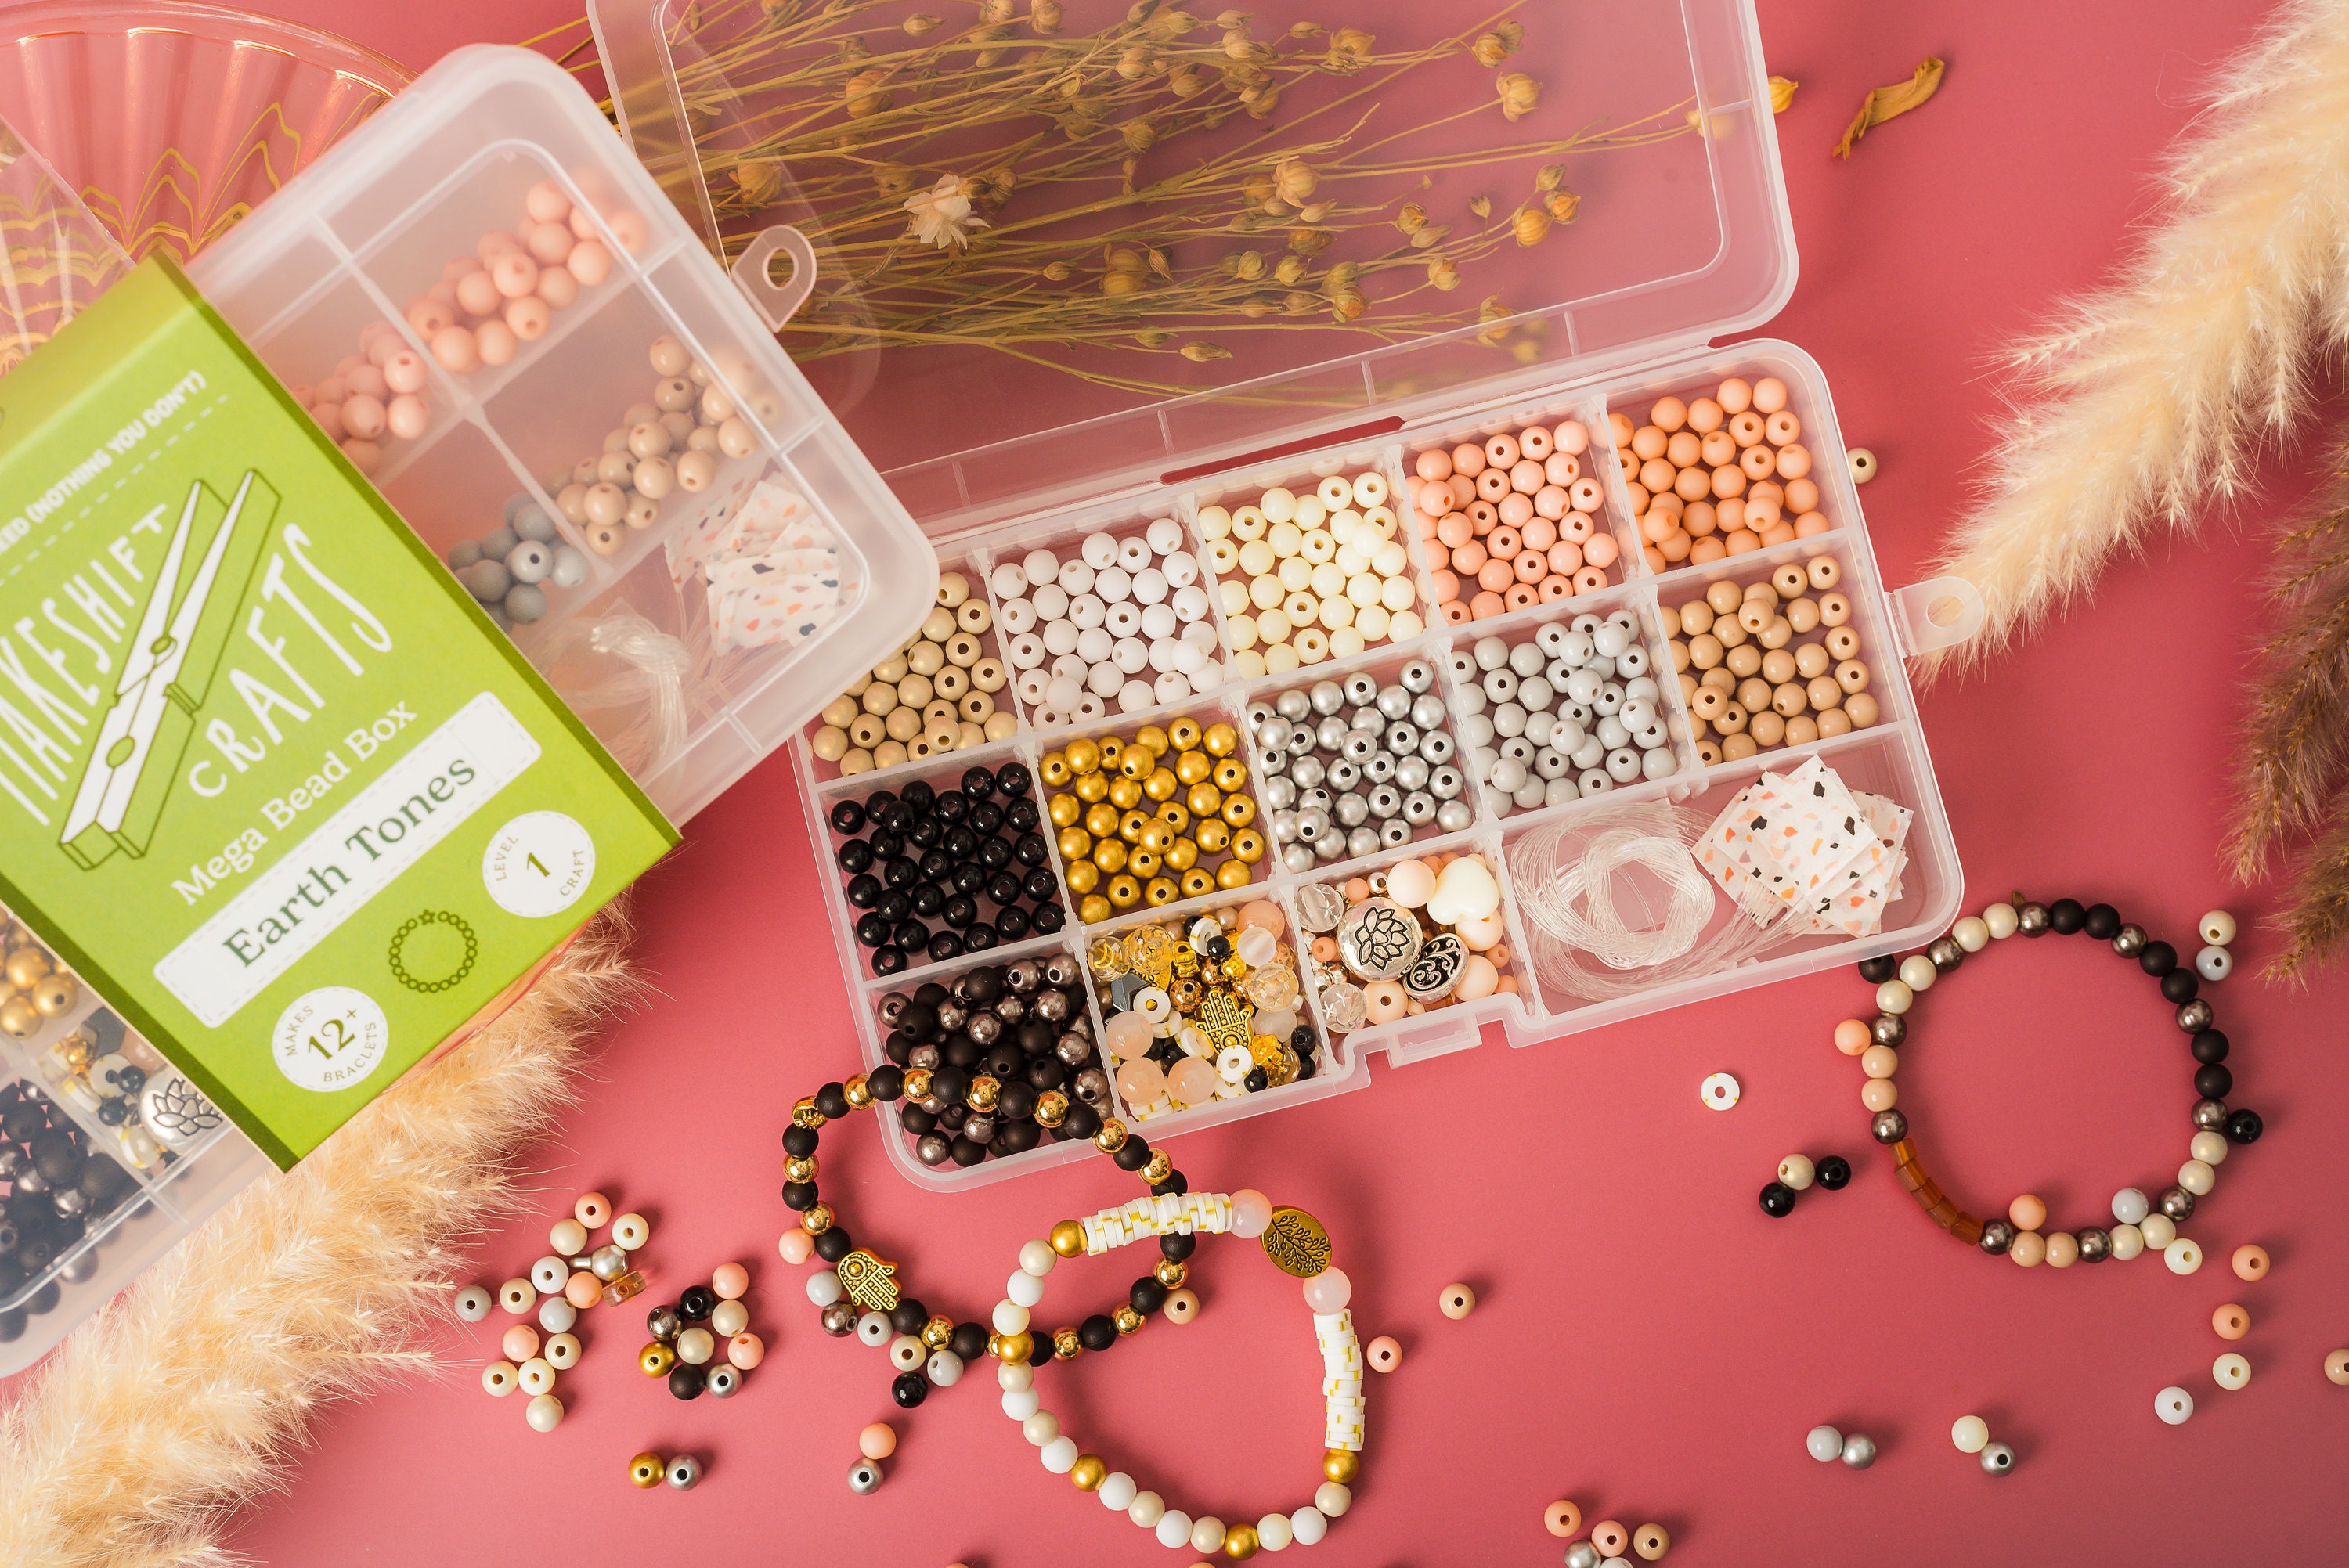 Personalized Gift for Kids, DIY Stretchy Bracelet Craft Kit, Bracelet Making  Kit, Activity Box, Friendship Bracelets, Jewelry Making 